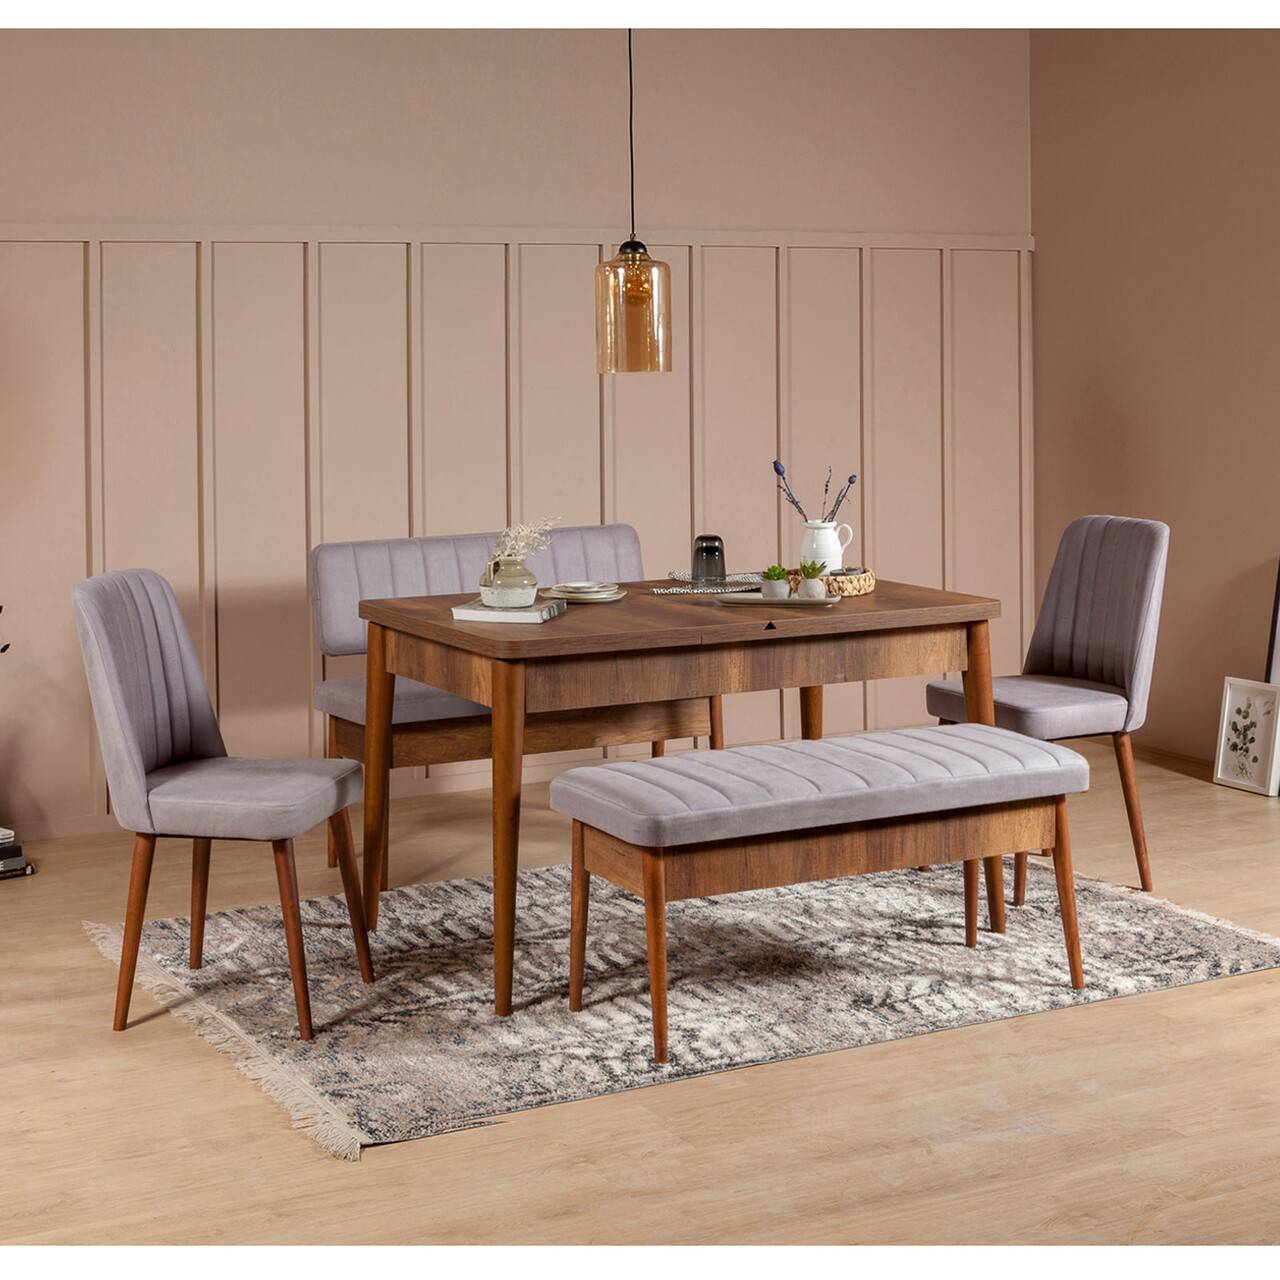 Set di tavolo allungabile, 2 sedie, panca e seduta Malva Legno scuro e tessuto grigio